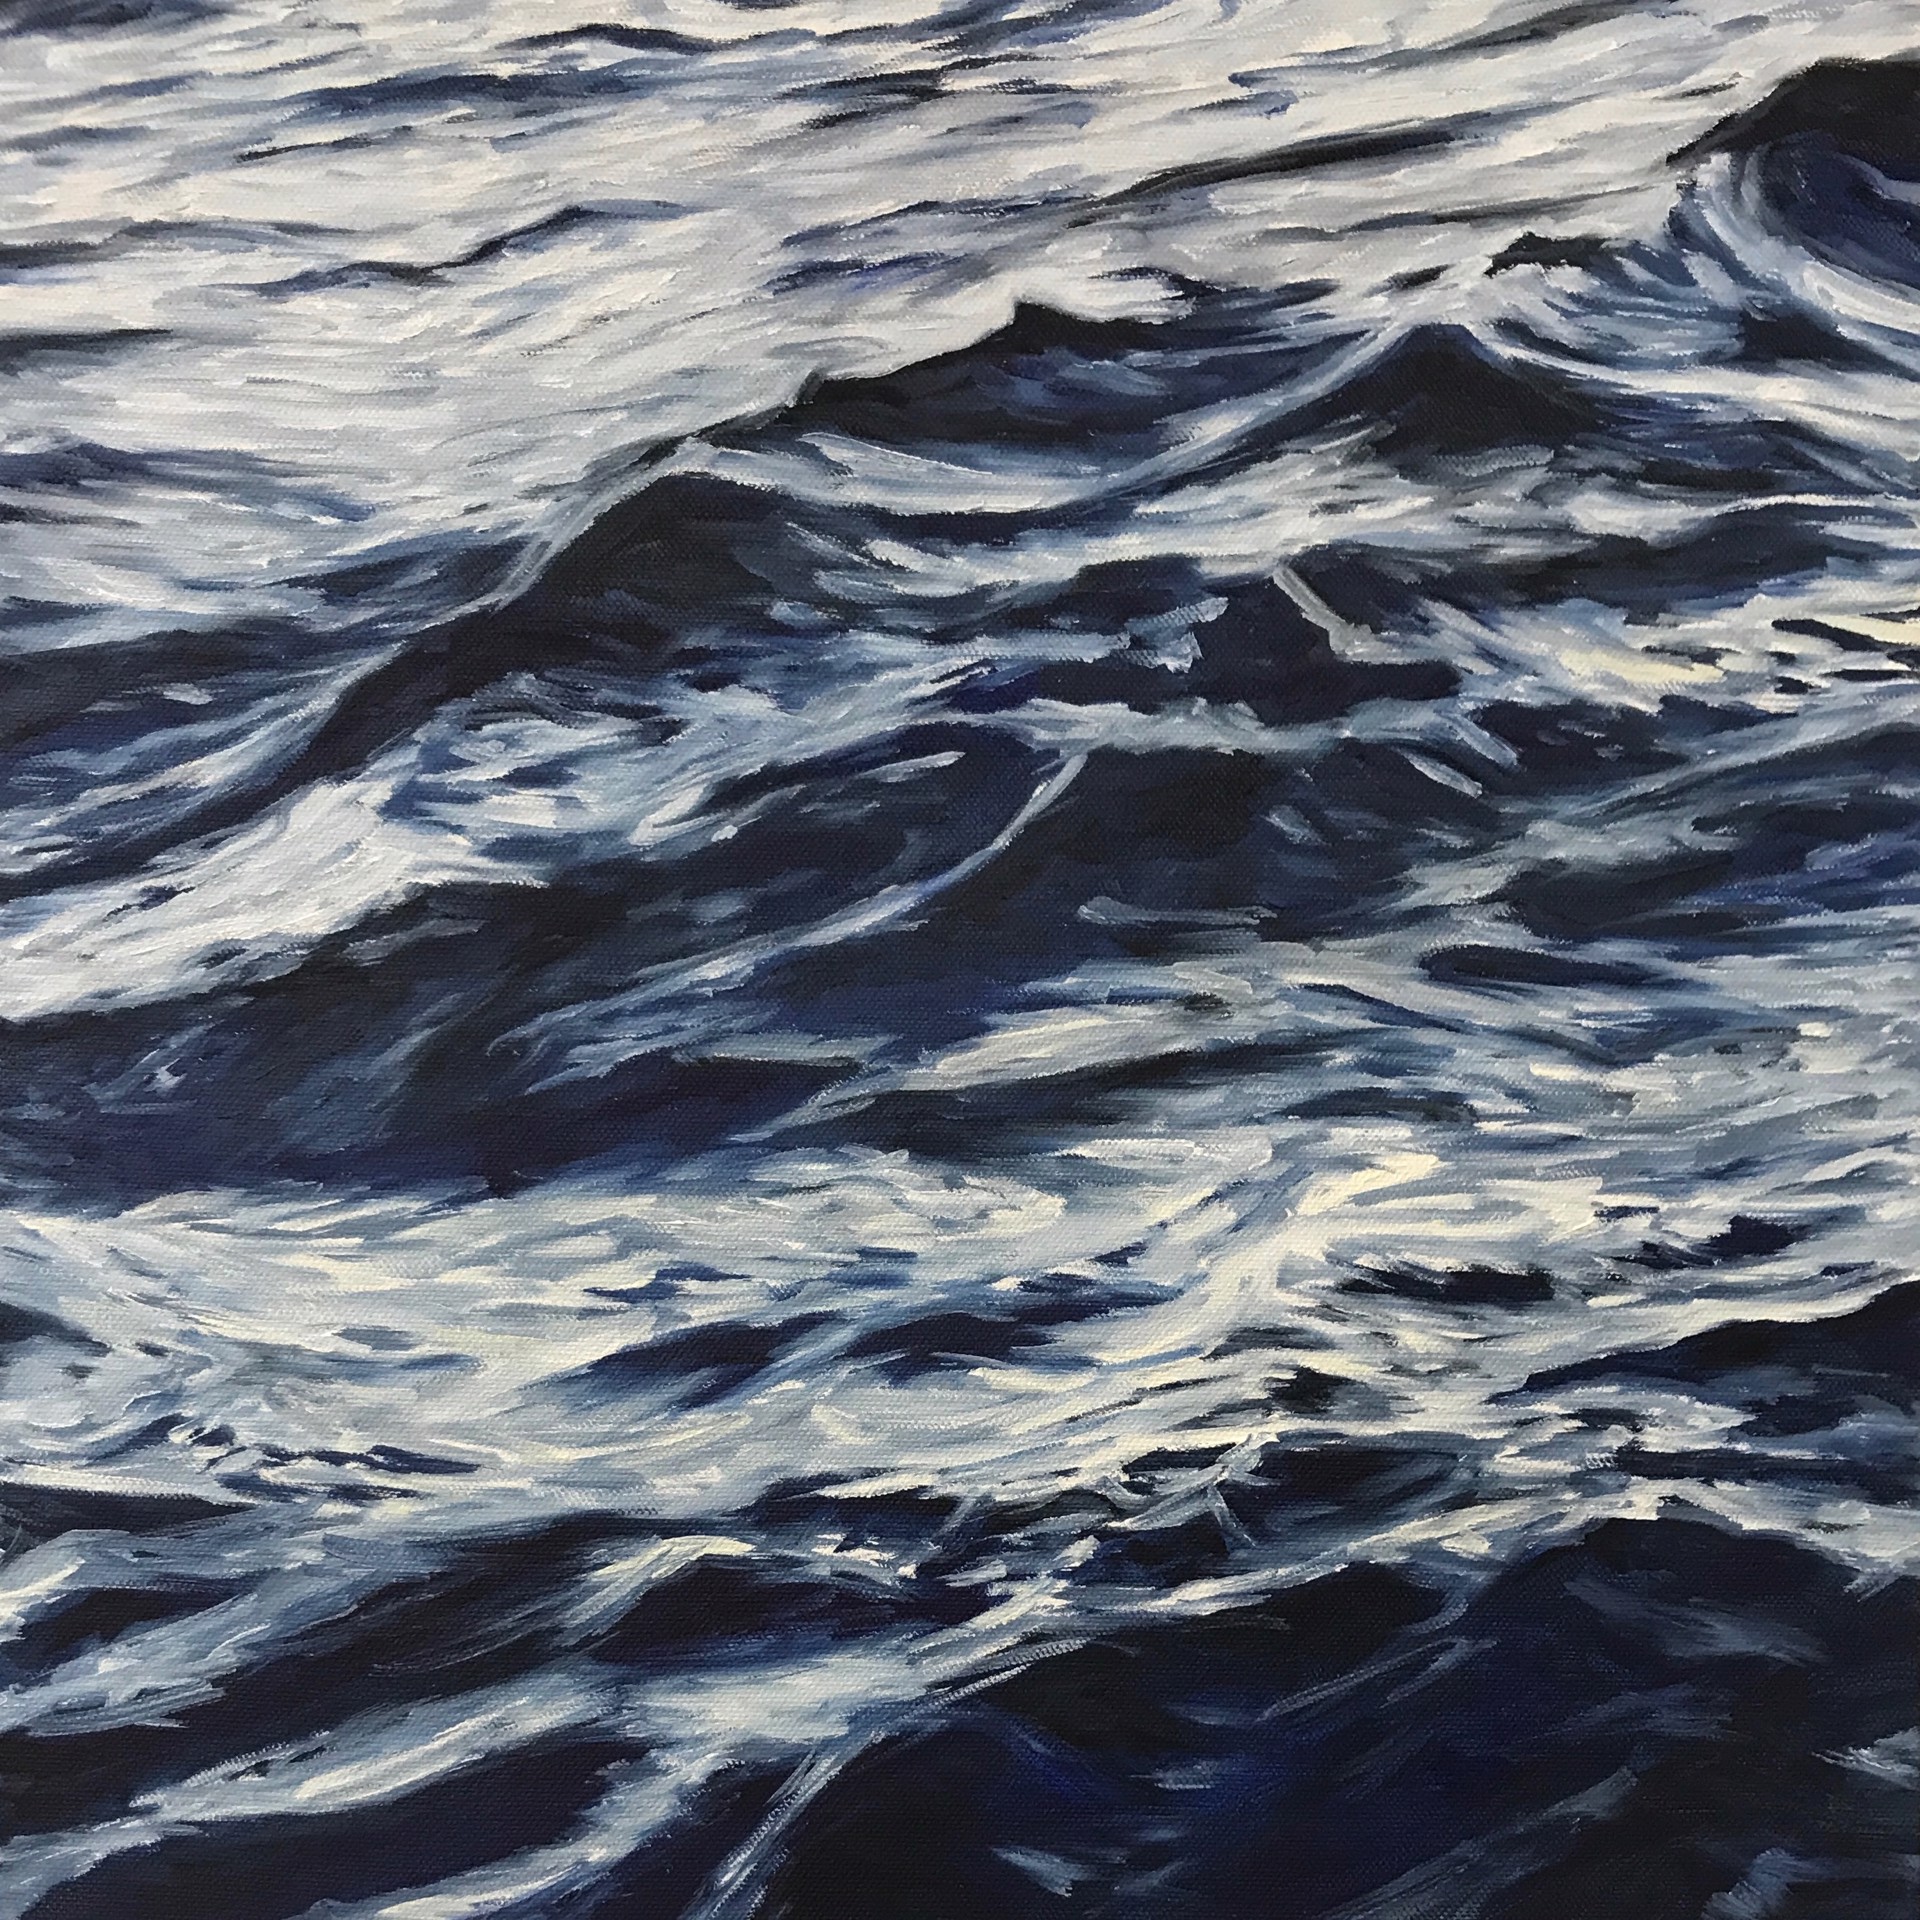 Lahaina Waves 1 by Valerie Eickmeier